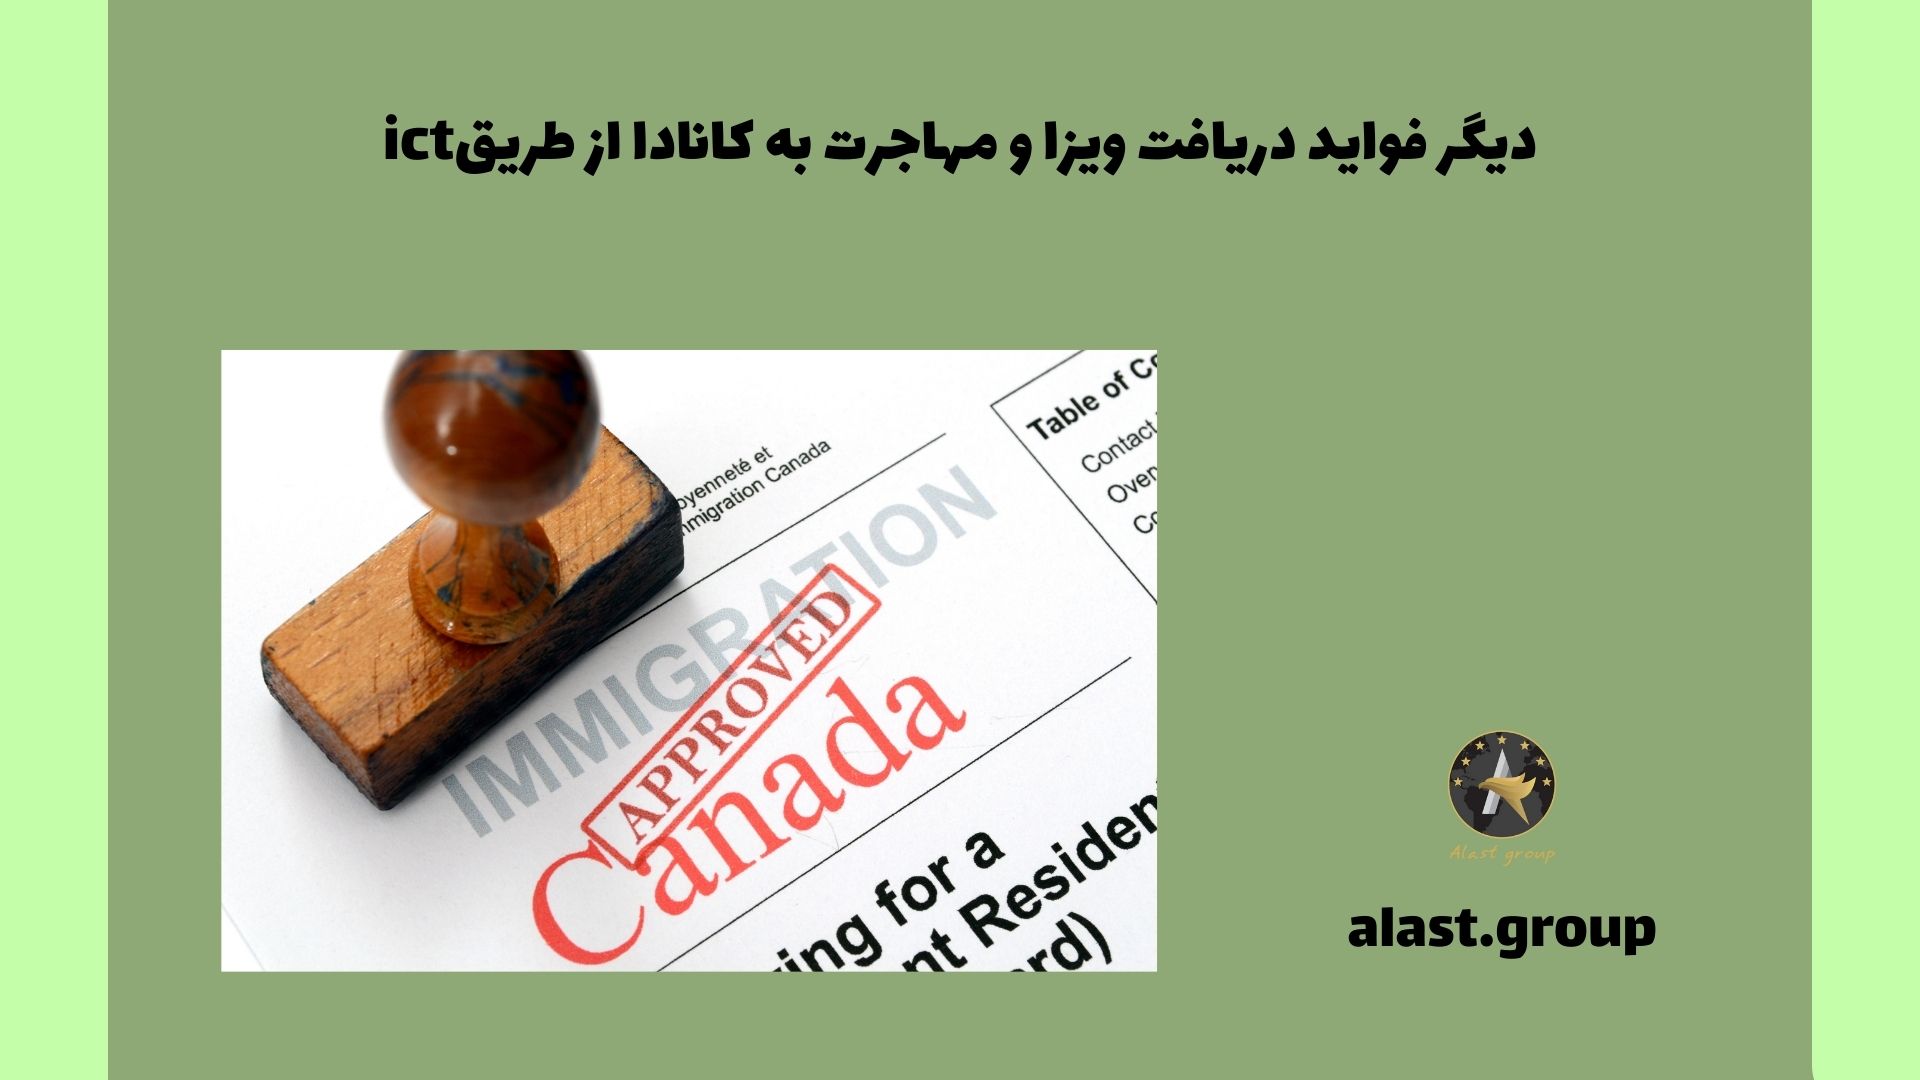 دیگر فواید دریافت ویزا و مهاجرت به کانادا از طریق ict